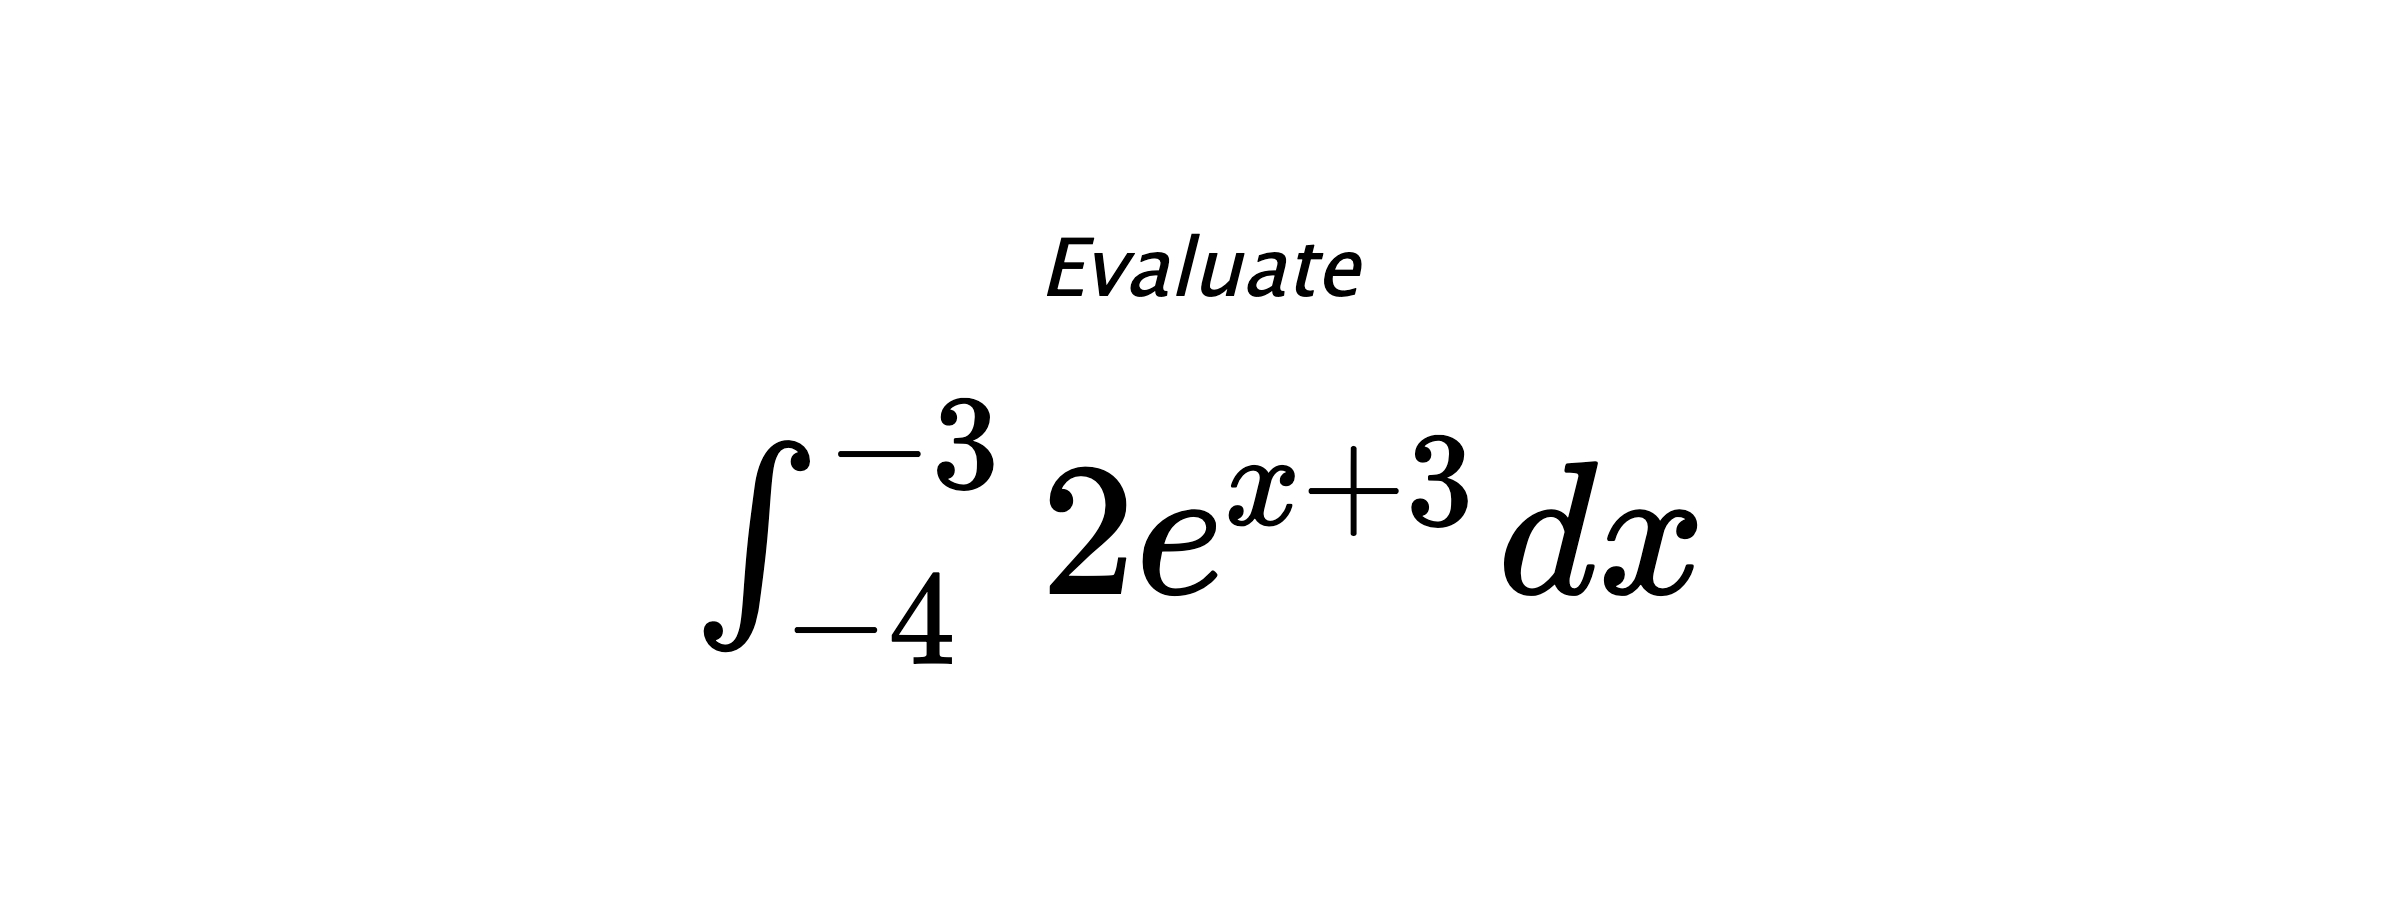 Evaluate $ \int_{-4}^{-3} 2e^{x+3} \hspace{0.2cm} dx $